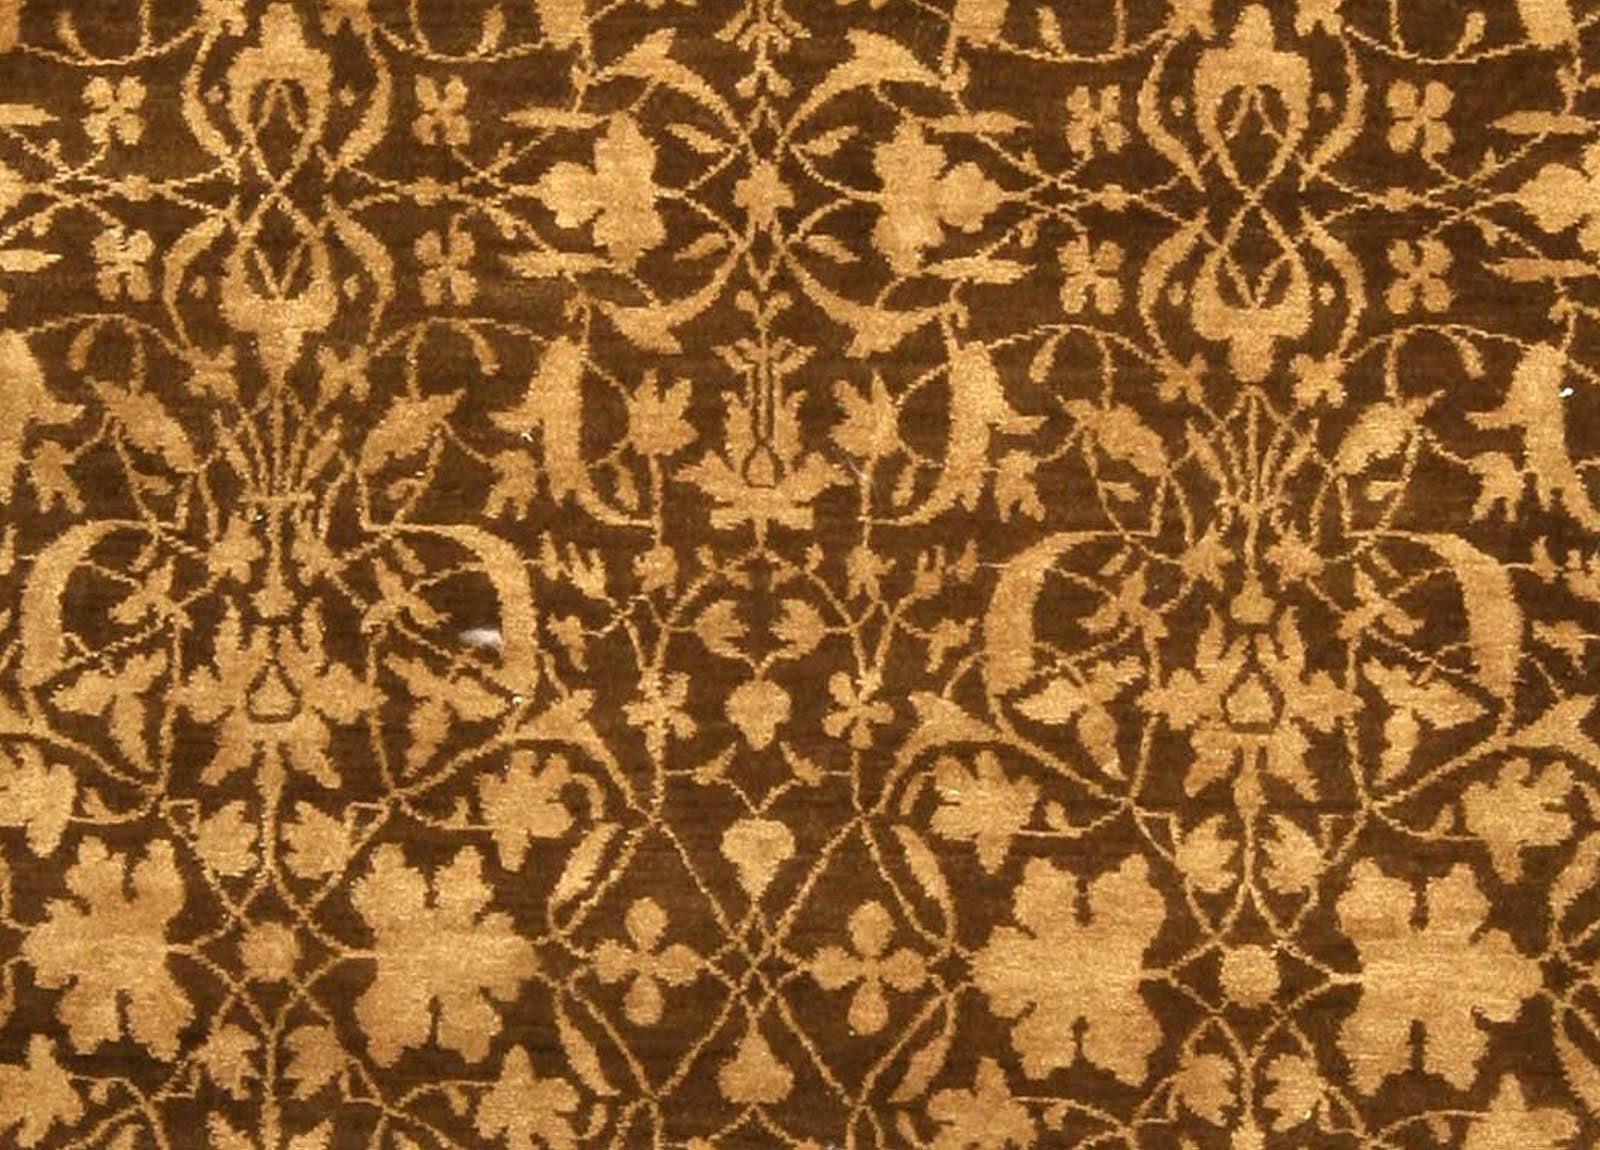 Modern Tibetan Beige Brown Silk Wool Rug S7 by Doris Leslie Blau
Size: 7'0